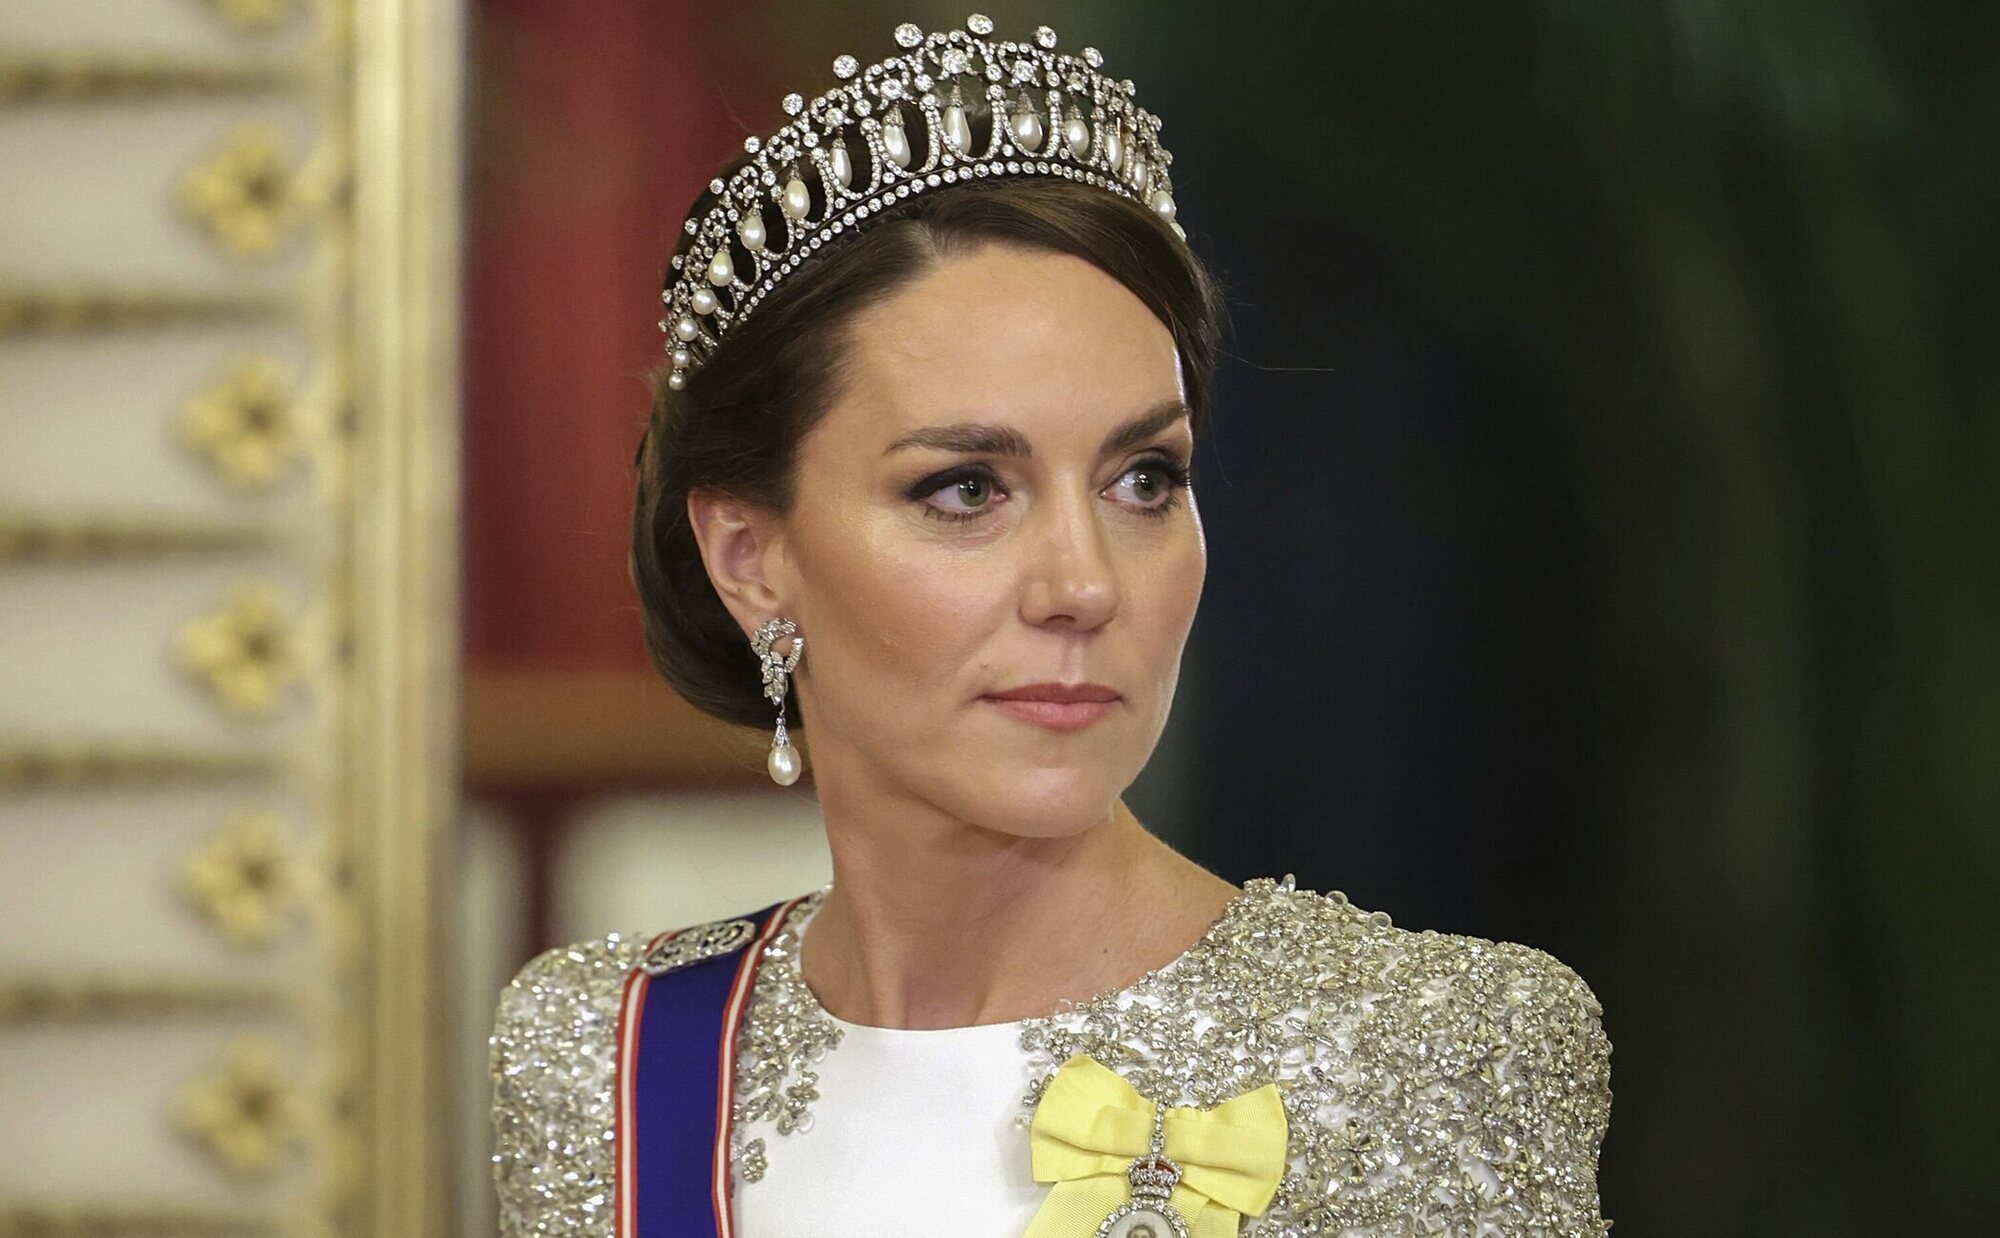 El Palacio de Kensington confirma que la operación de Kate Middleton no tiene que ver con un problema canceroso